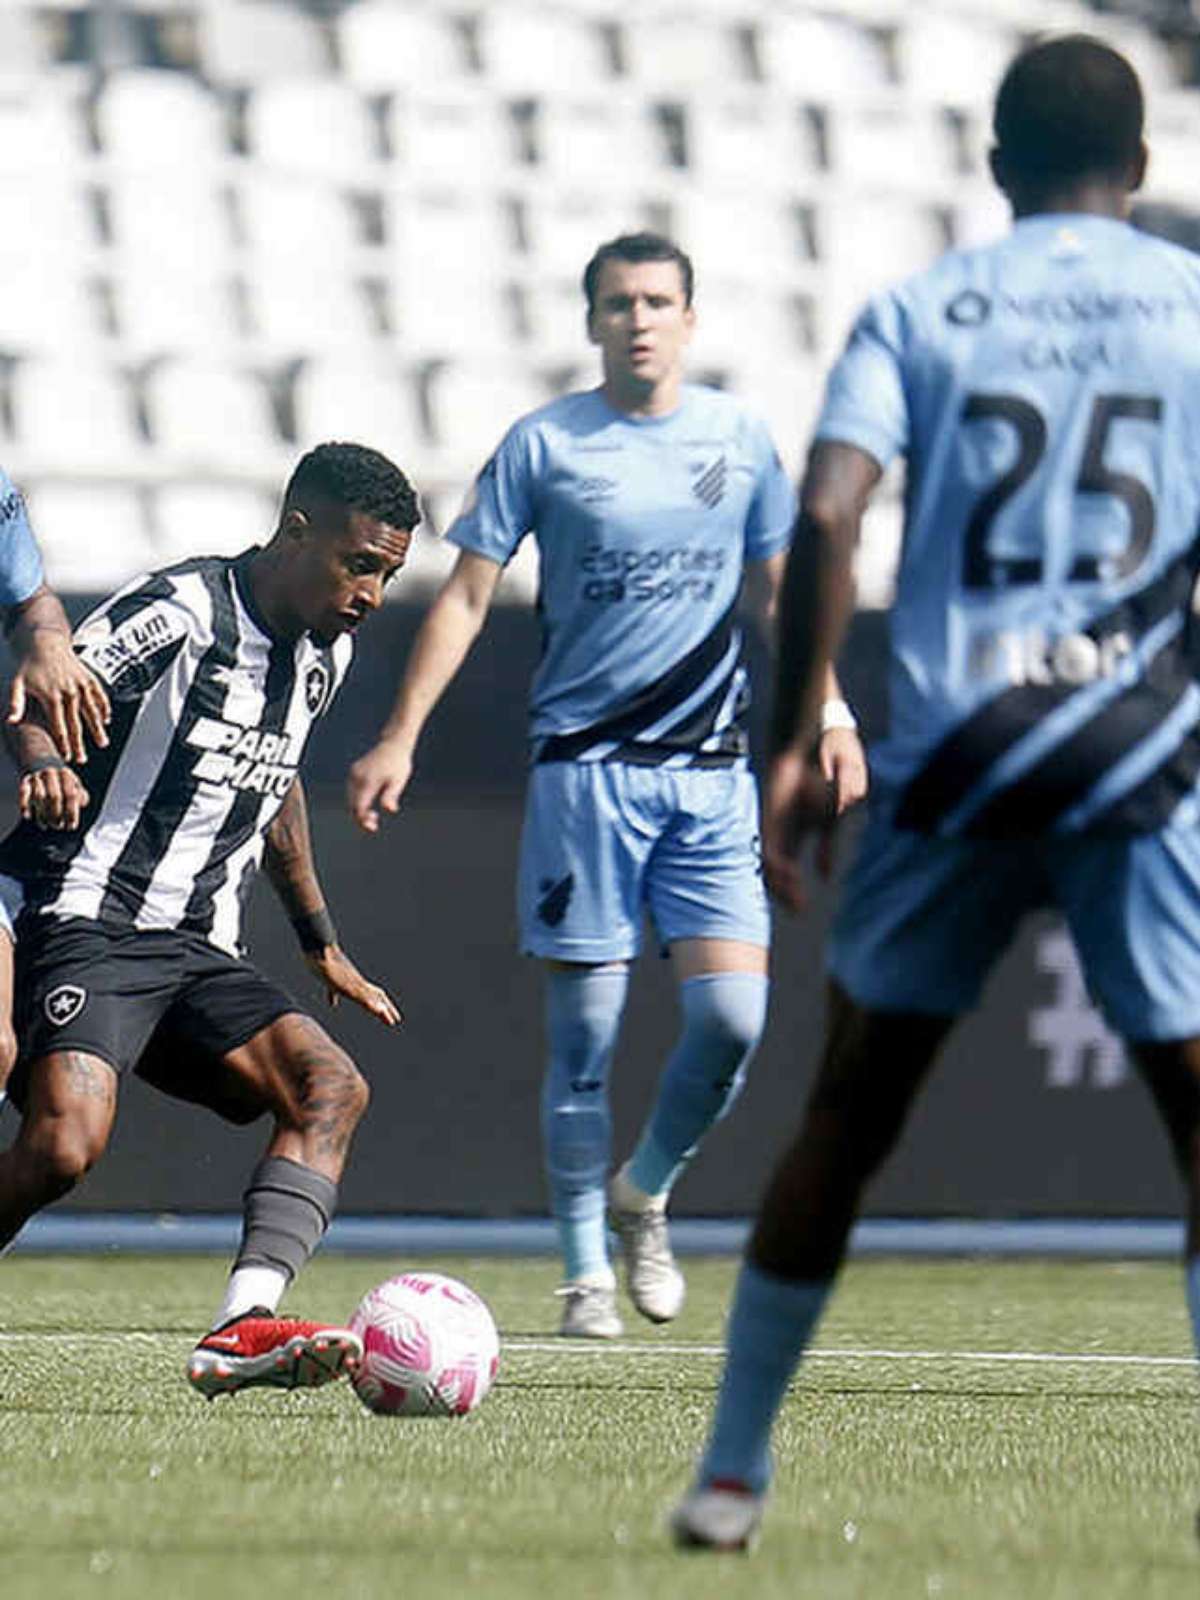 Em jogo de falhas de lado a lado, Botafogo e Atlético-GO empatam